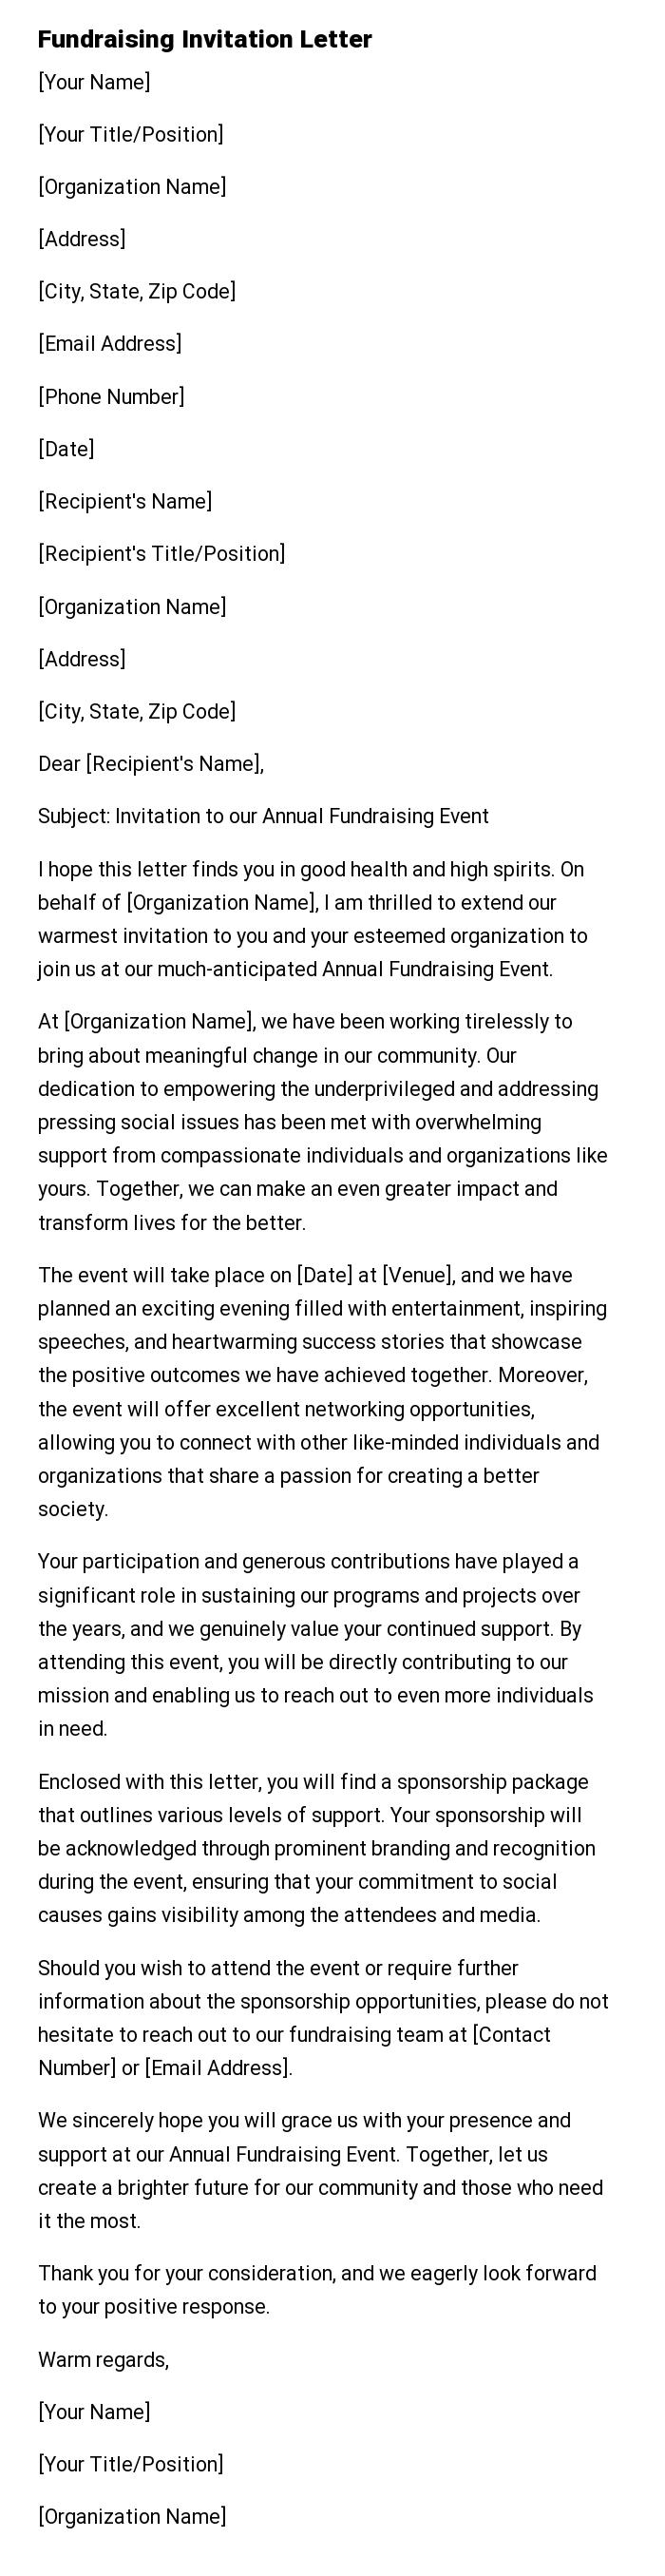 Fundraising Invitation Letter